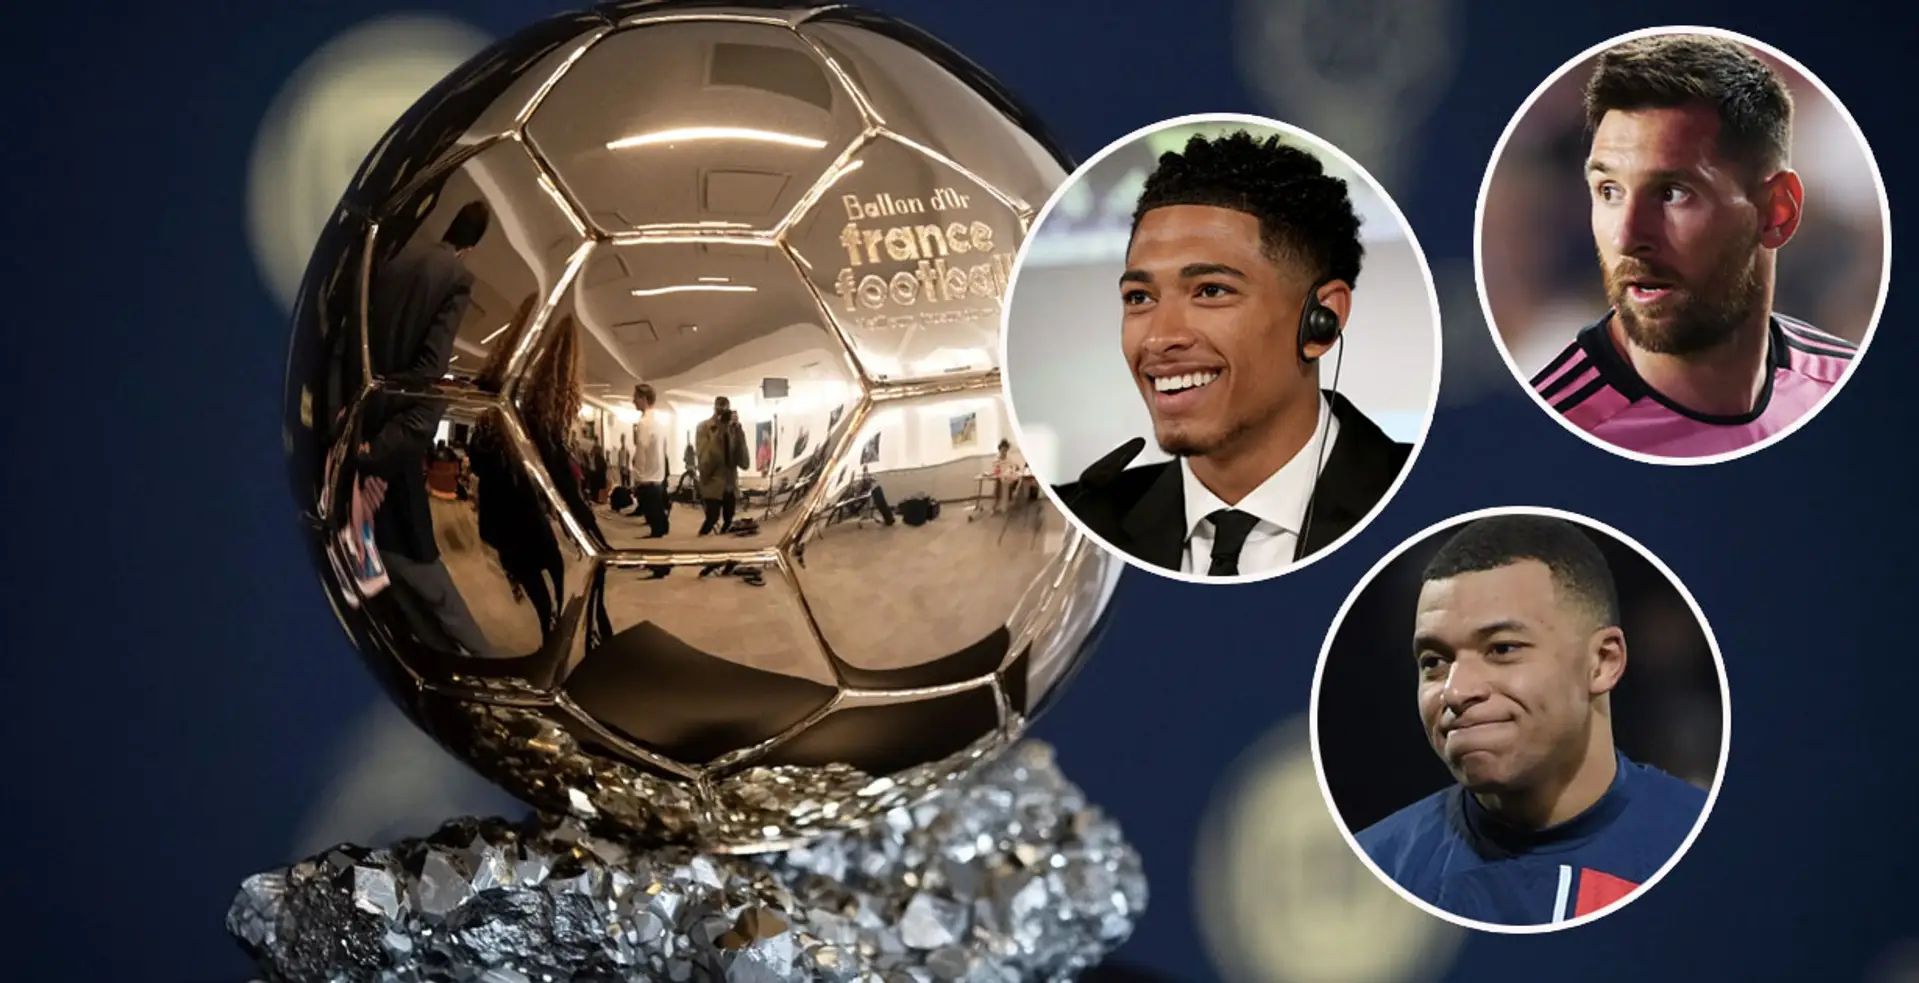 Les favoris pour le Ballon d'Or révélés : Messi dans le top 6